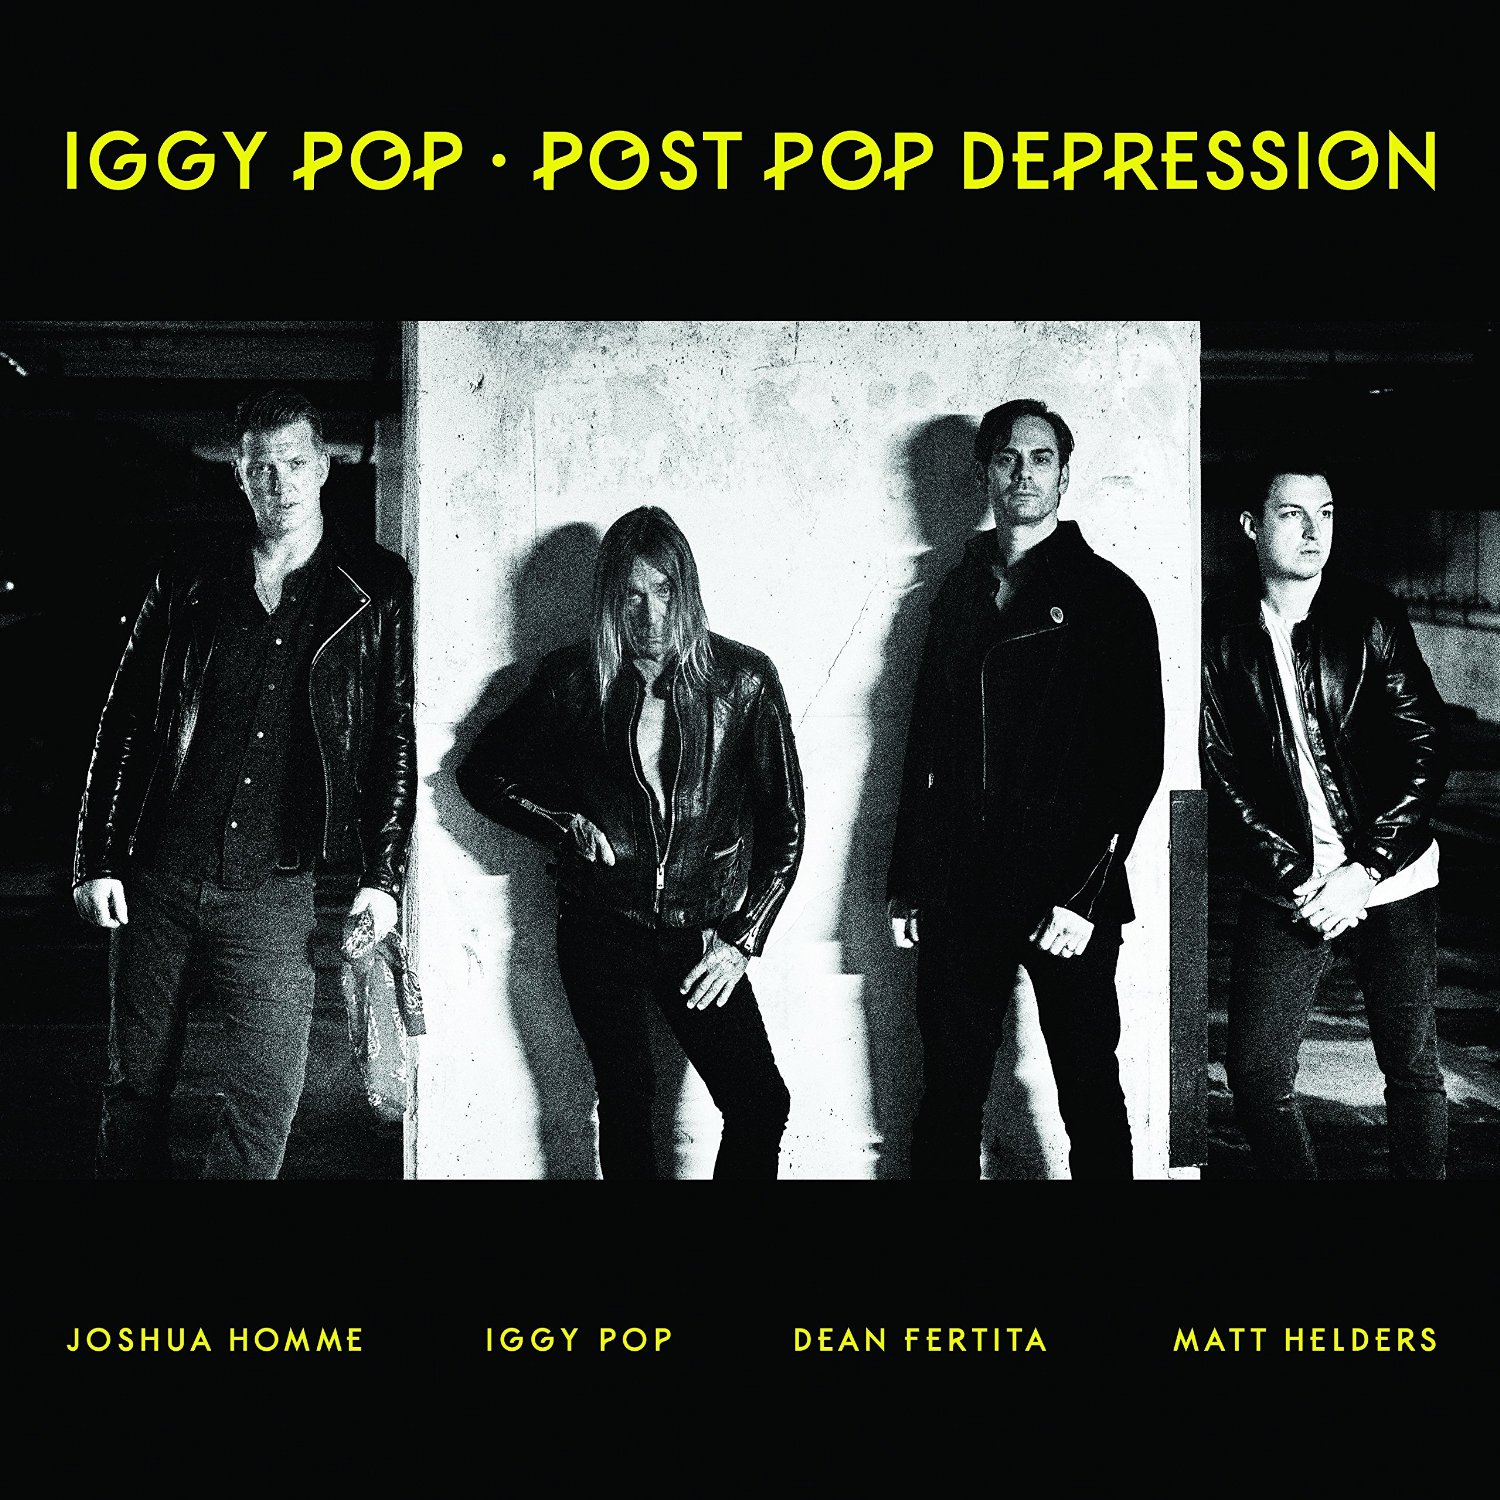 Album cover for Iggy Pop's Post Pop Depression album.